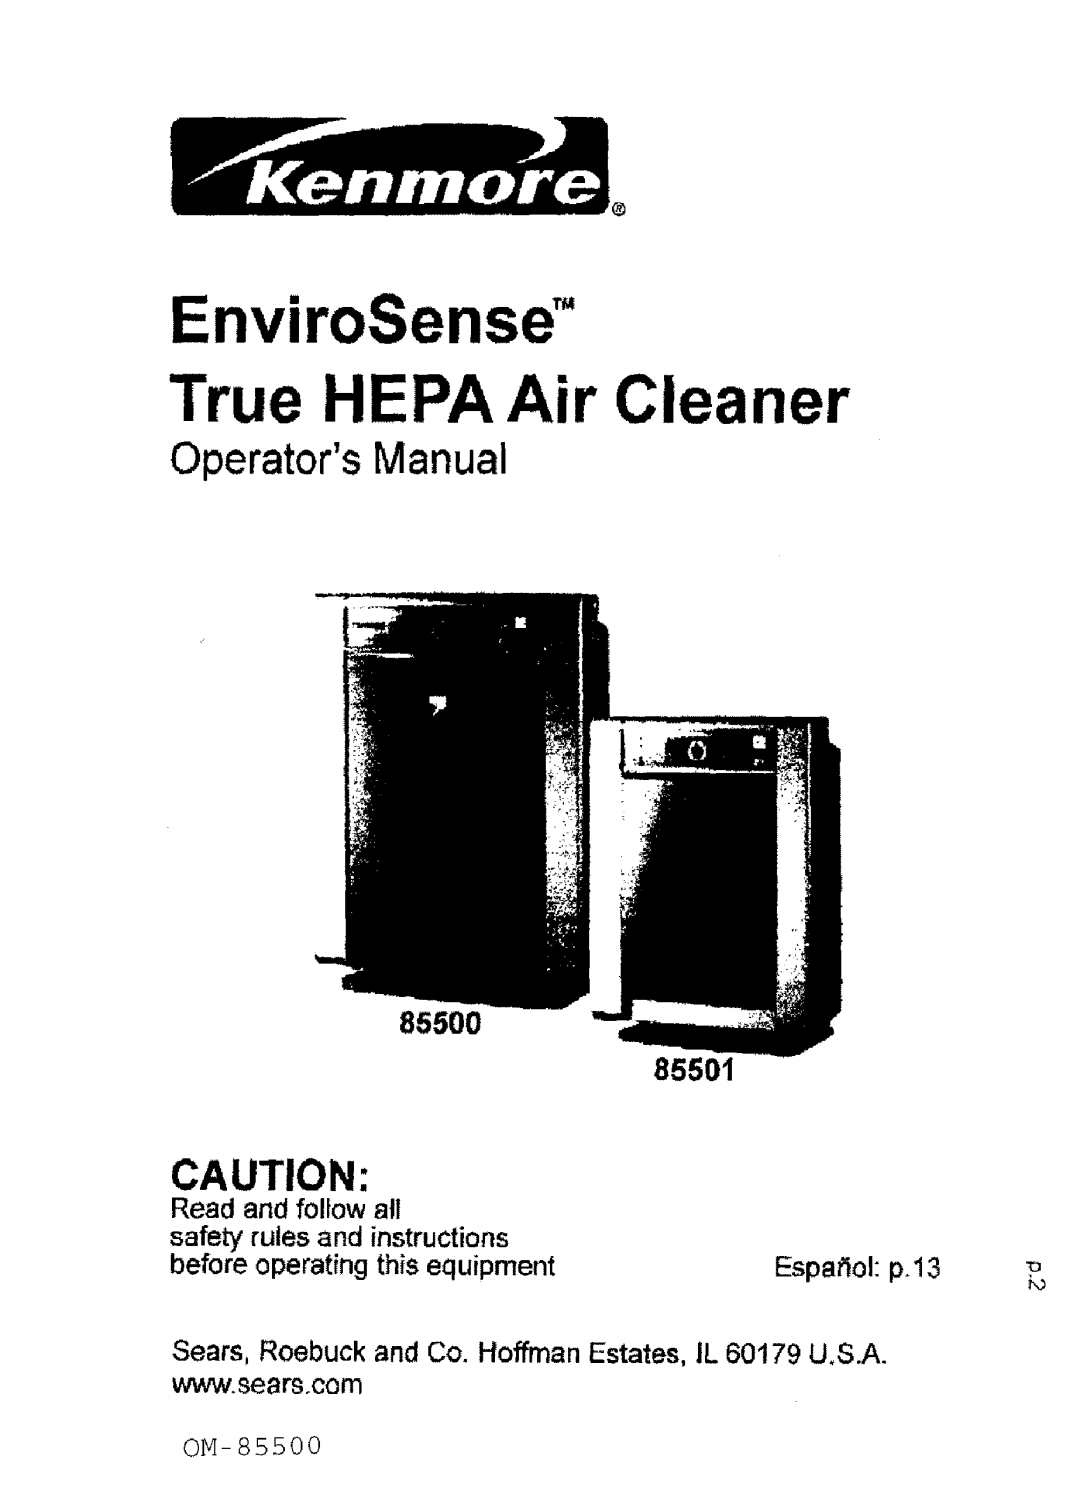 Kenmore 85500 manual OperatorsManual, 85501, EnviroSensd True HEPA Air Cleaner 